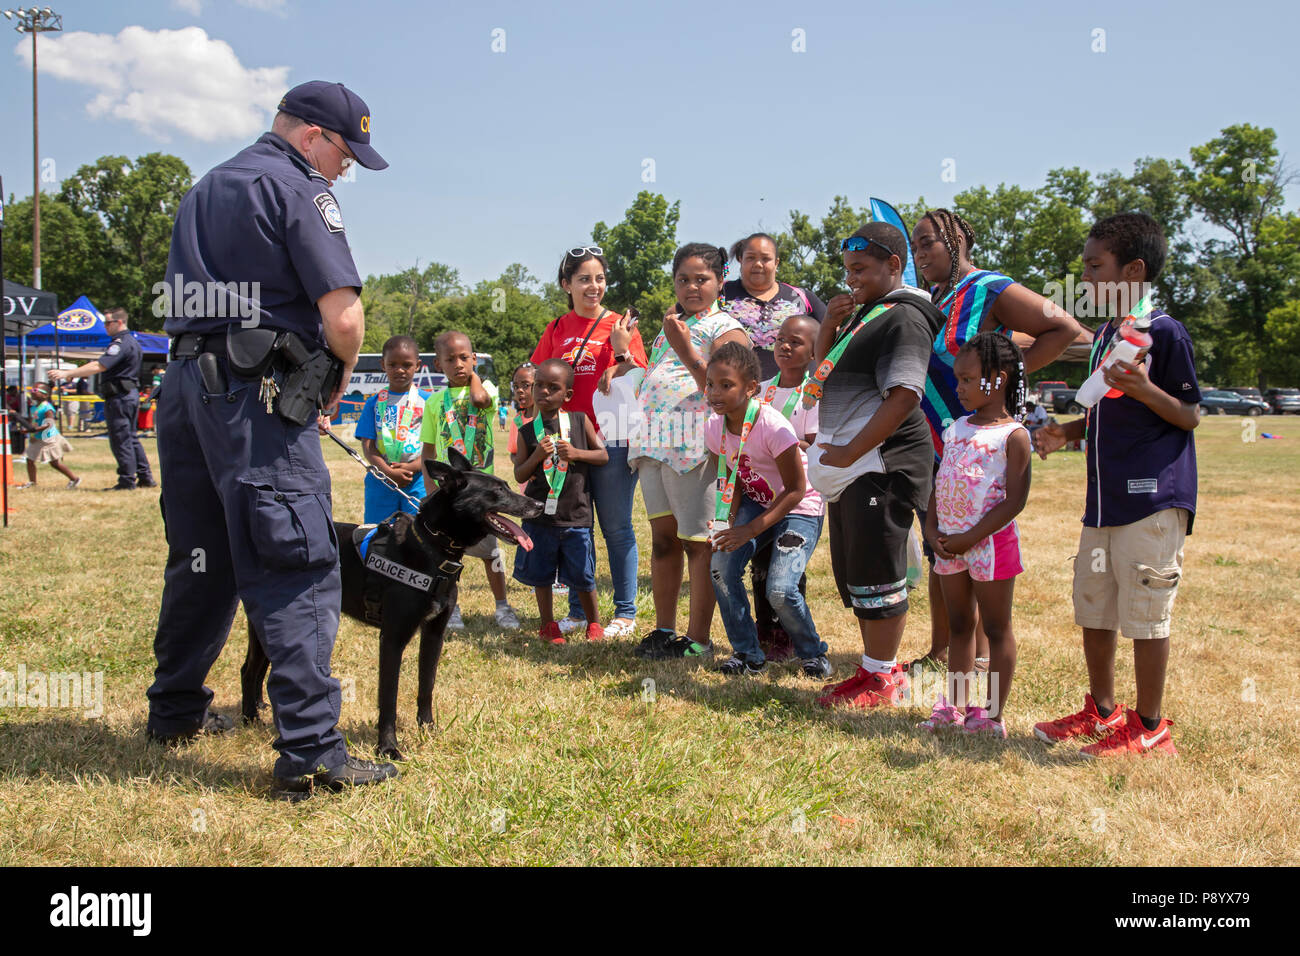 Detroit, Michigan - UN U.S. Customs and Border Protection officer montre son chien, Buddy, aux enfants à la Metro Detroit de la jeunesse. Buddy est formé pour det Banque D'Images